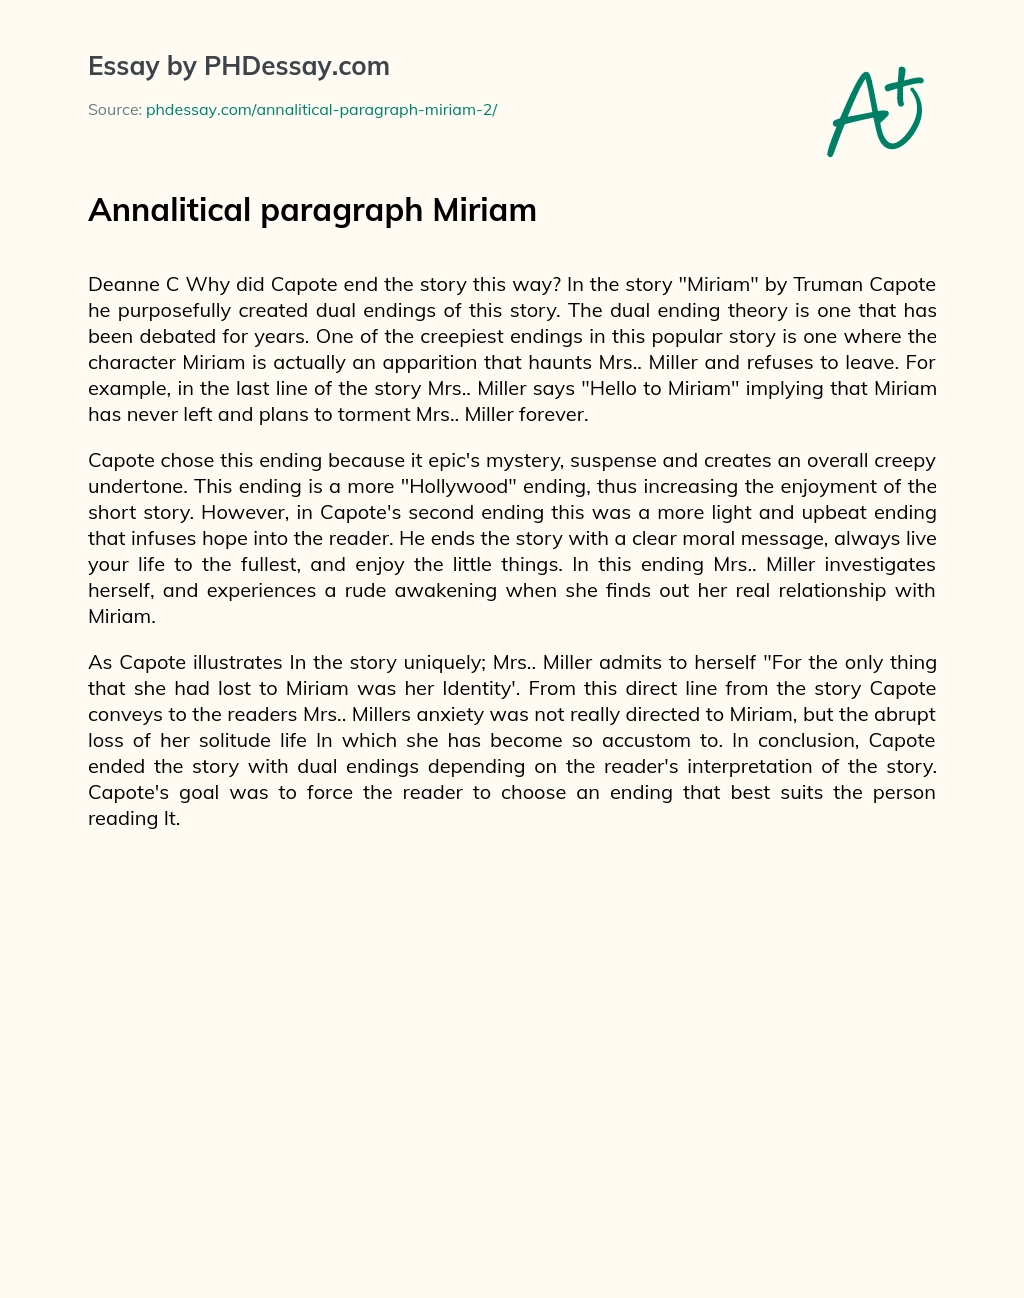 Annalitical Paragraph Miriam essay